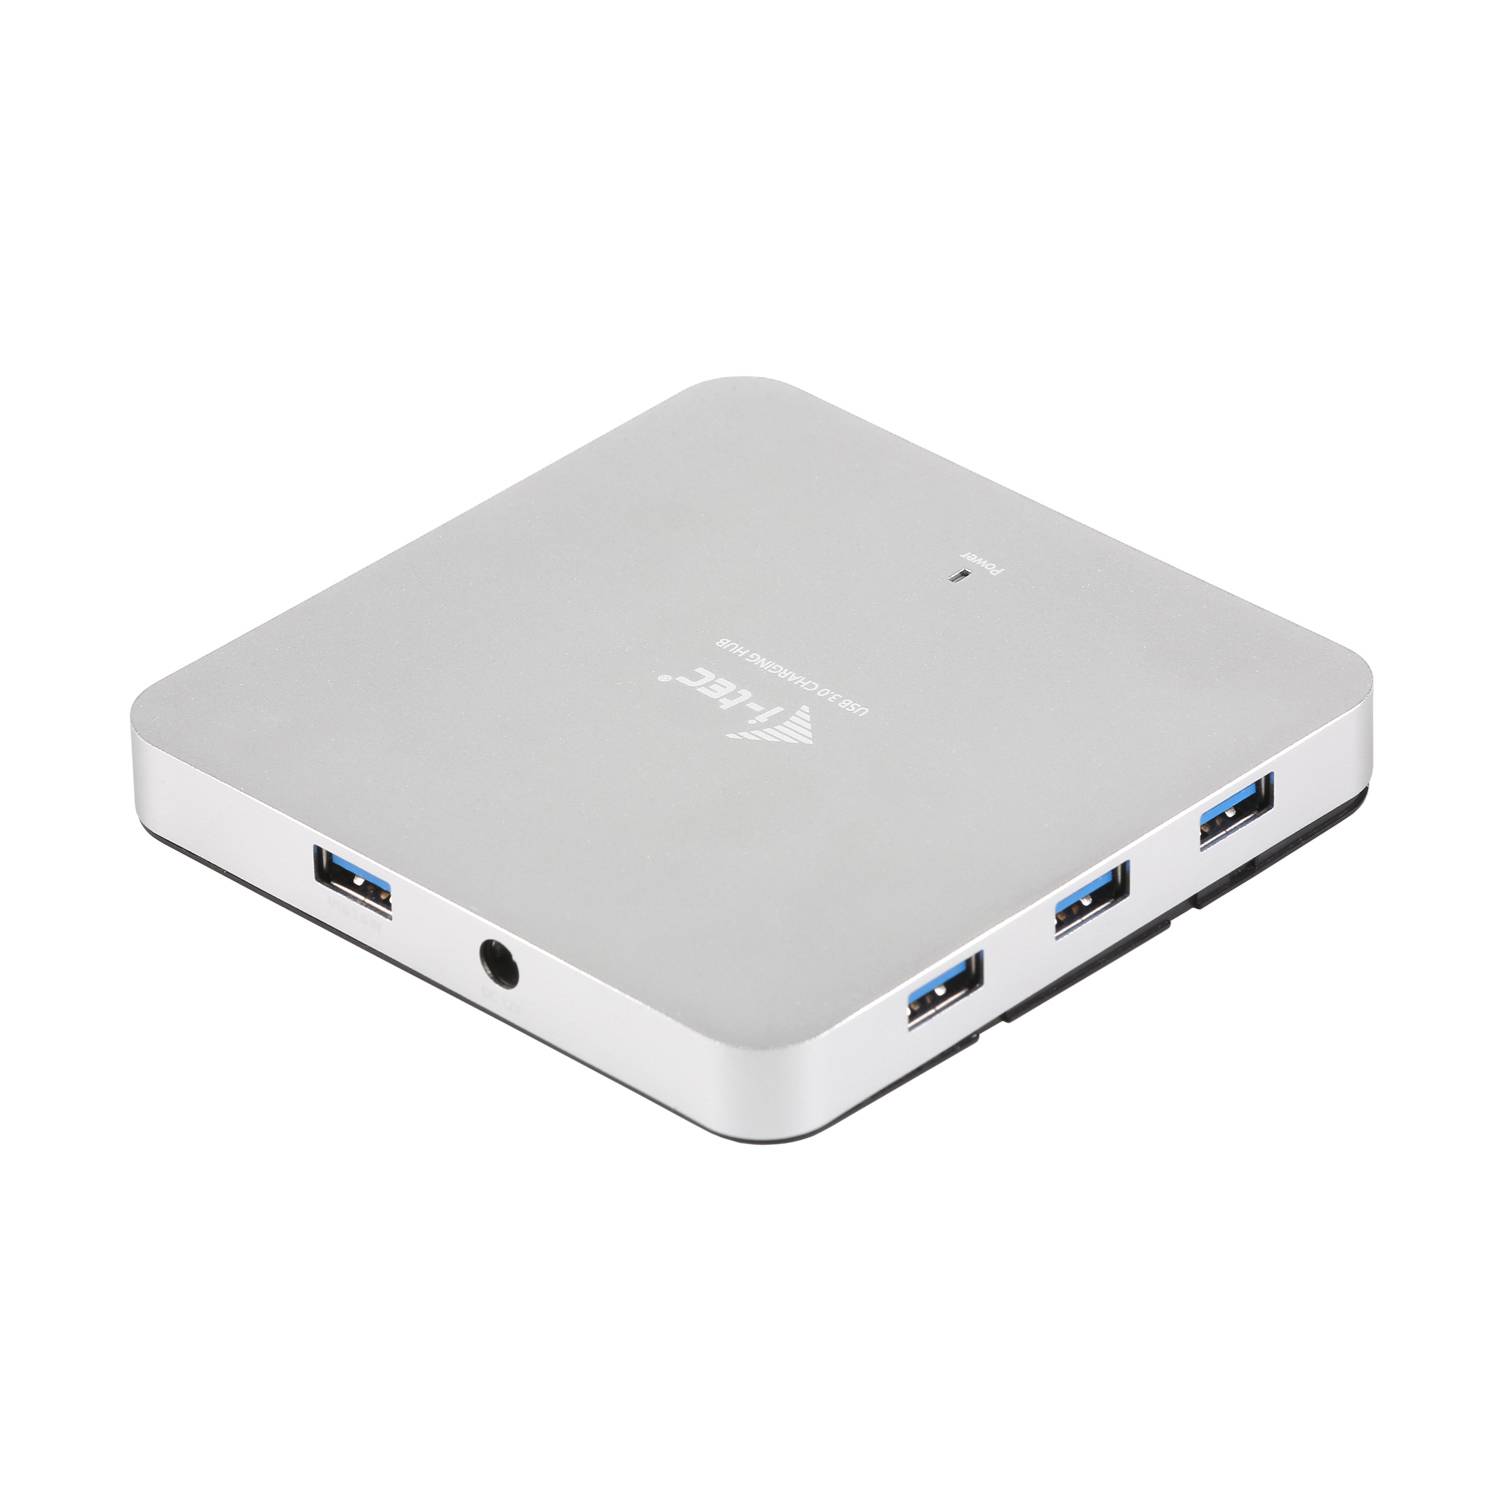 Rca Informatique - image du produit : I-TEC METAL ACTIVE HUB 10 PORT USB 3.0 WITH PS WIN MAC OS